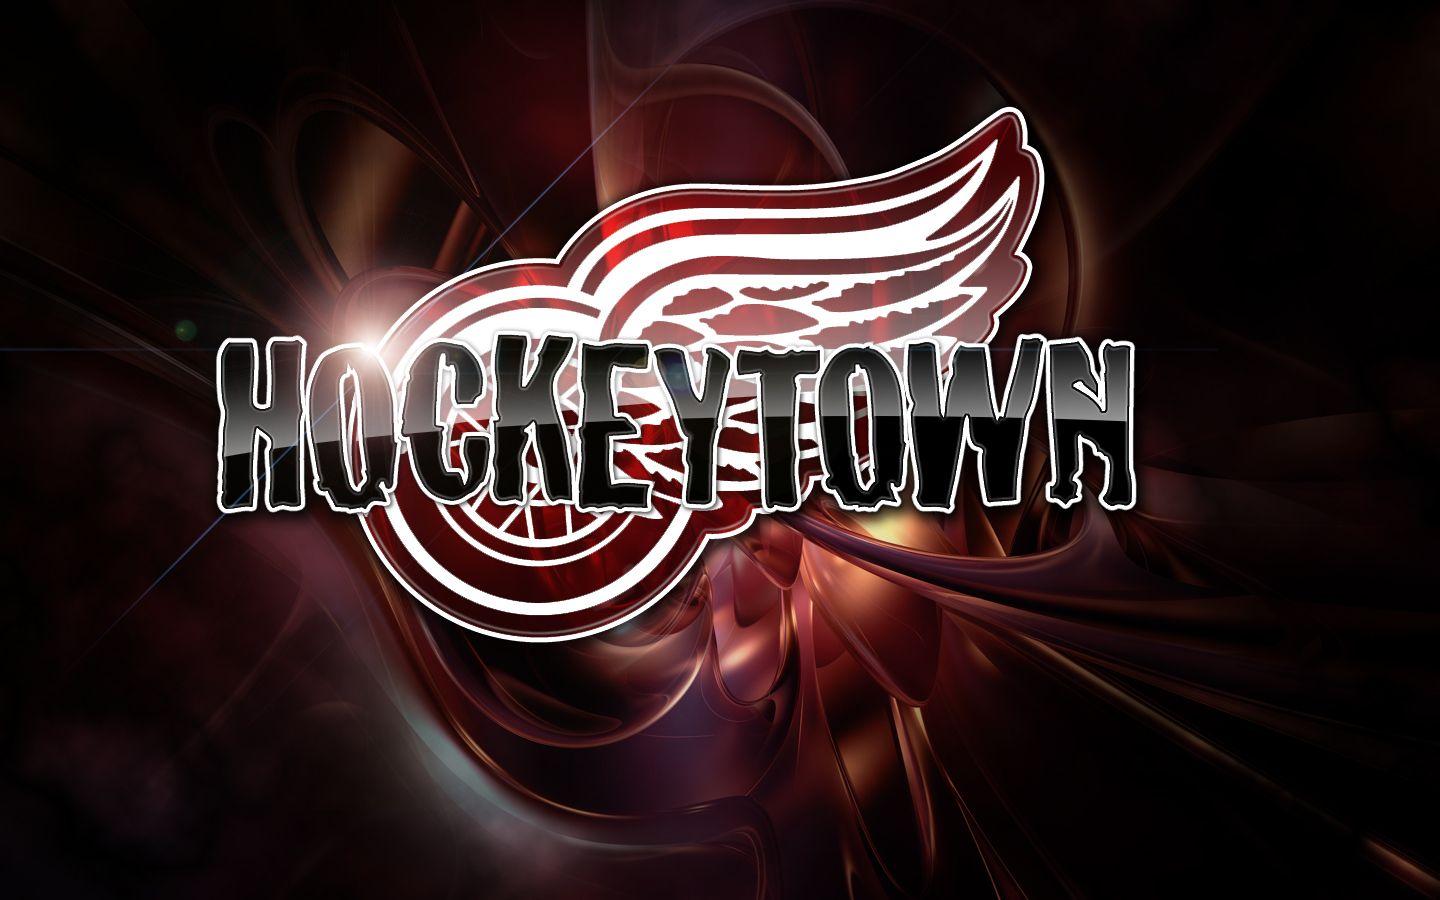 Detroit Red Wings Hockeytown Logo - Best 44+ Hockeytown Wallpaper on HipWallpaper | Hockeytown Wallpaper ...